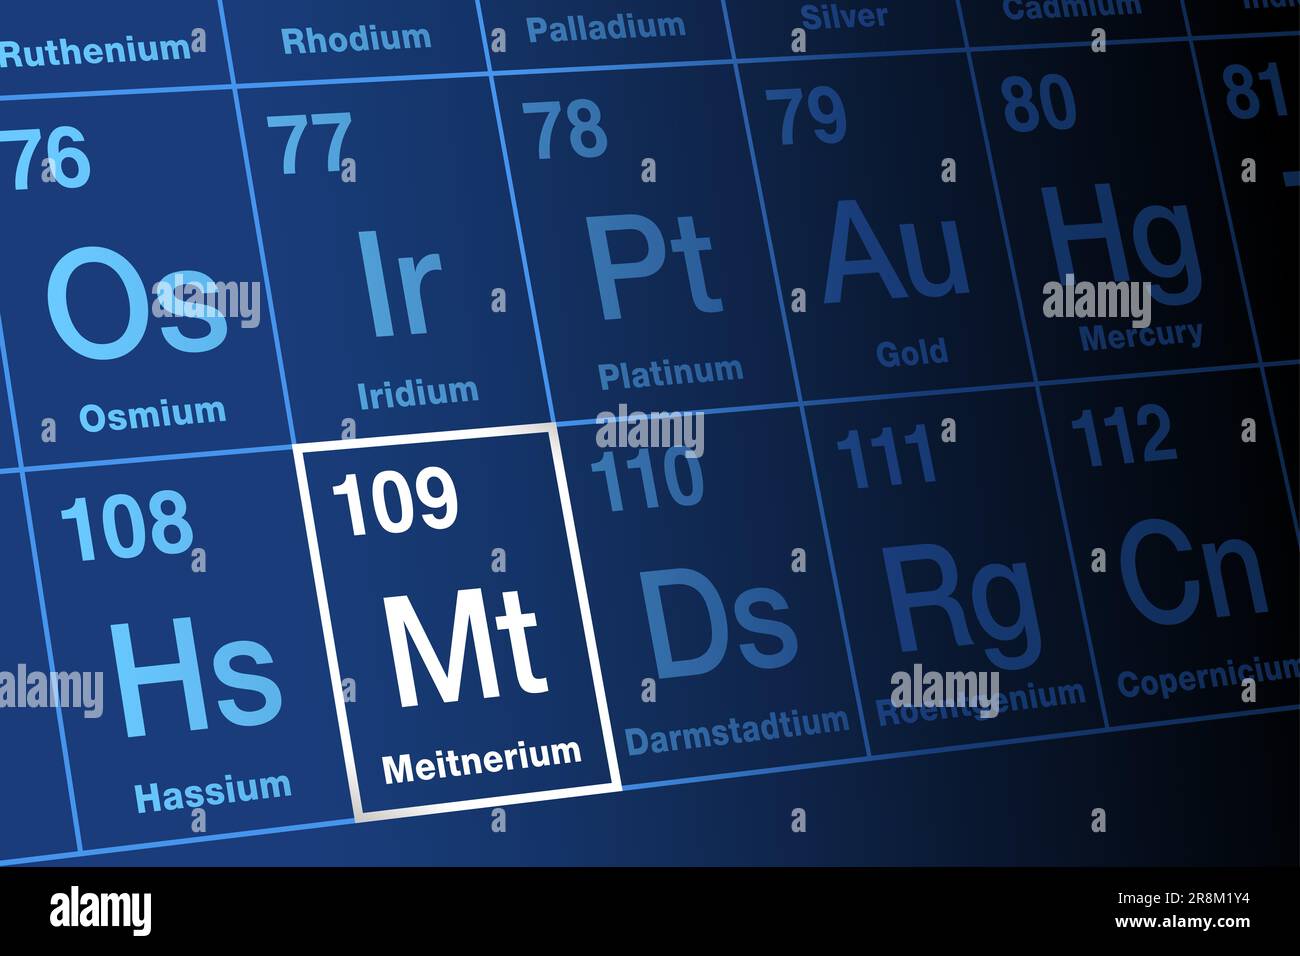 Meitnerium, sulla tavola periodica. Elemento transactinide sintetico estremamente radioattivo, superpesante, con simbolo dell'elemento Mt e numero atomico 109. Foto Stock